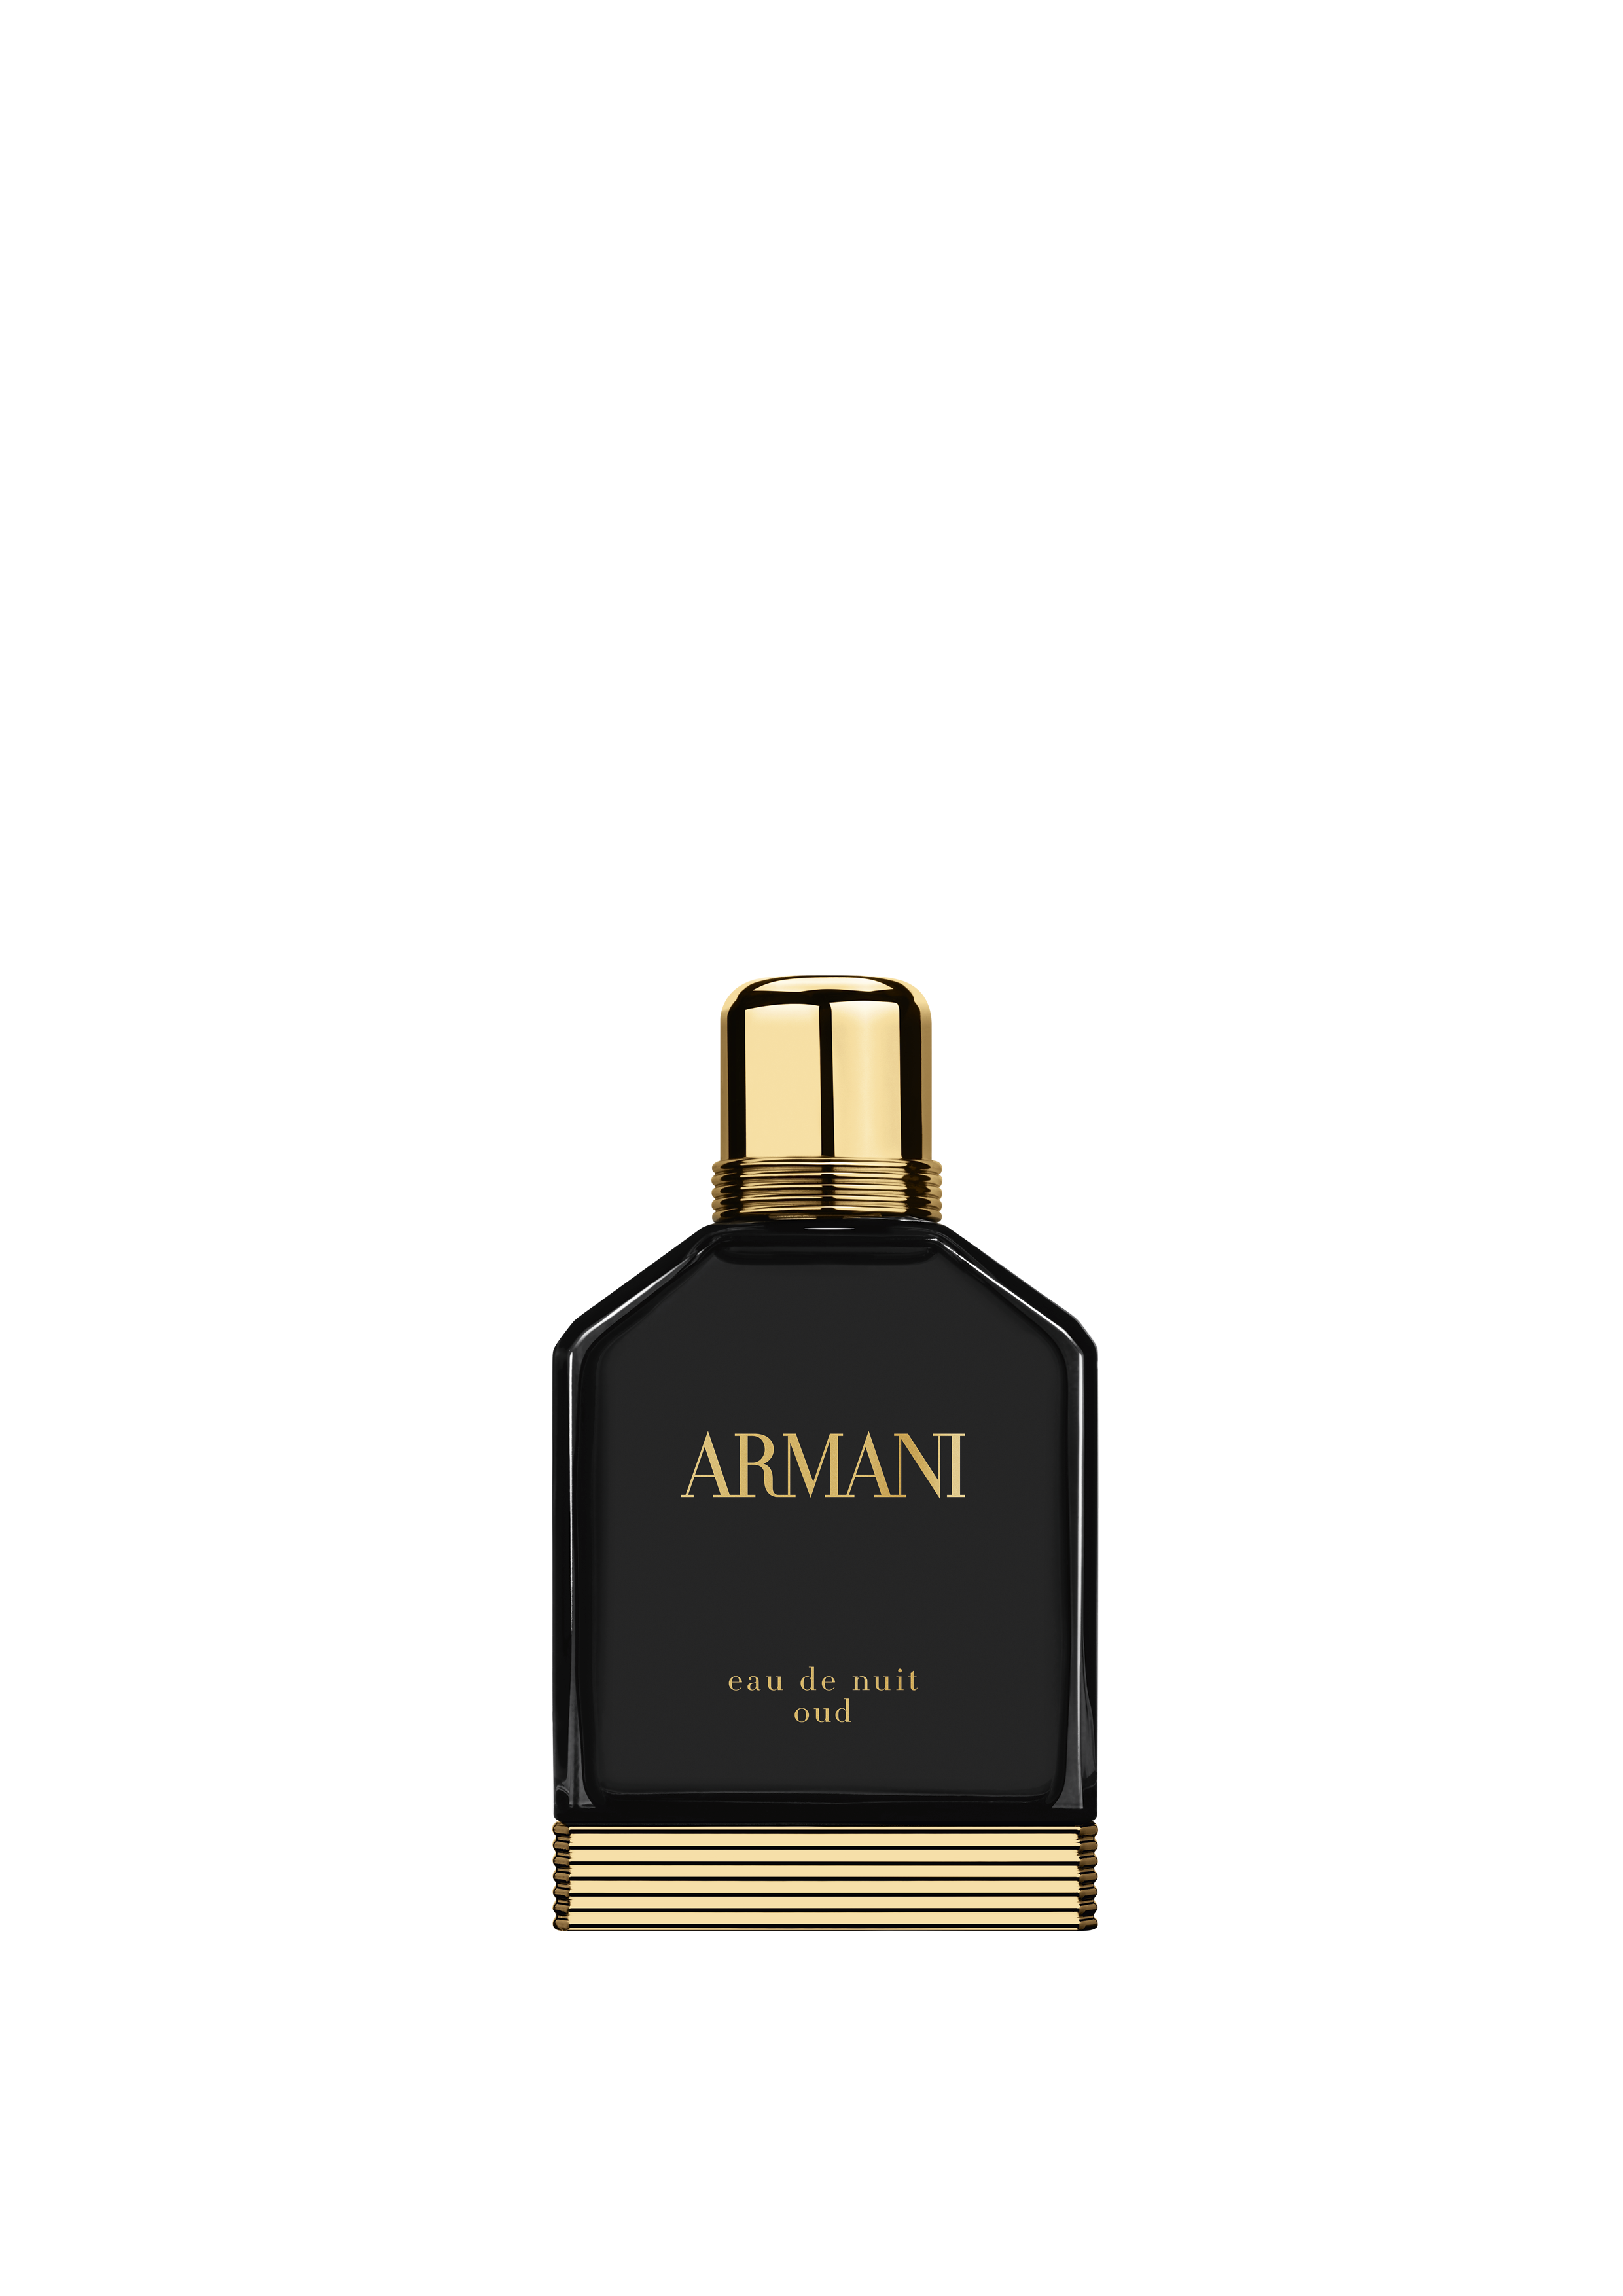 Giorgio Armani profumo Eau de Nuit Oud: la nuova fragranza maschile, l&#8217;essenza dell&#8217;eleganza perfetta